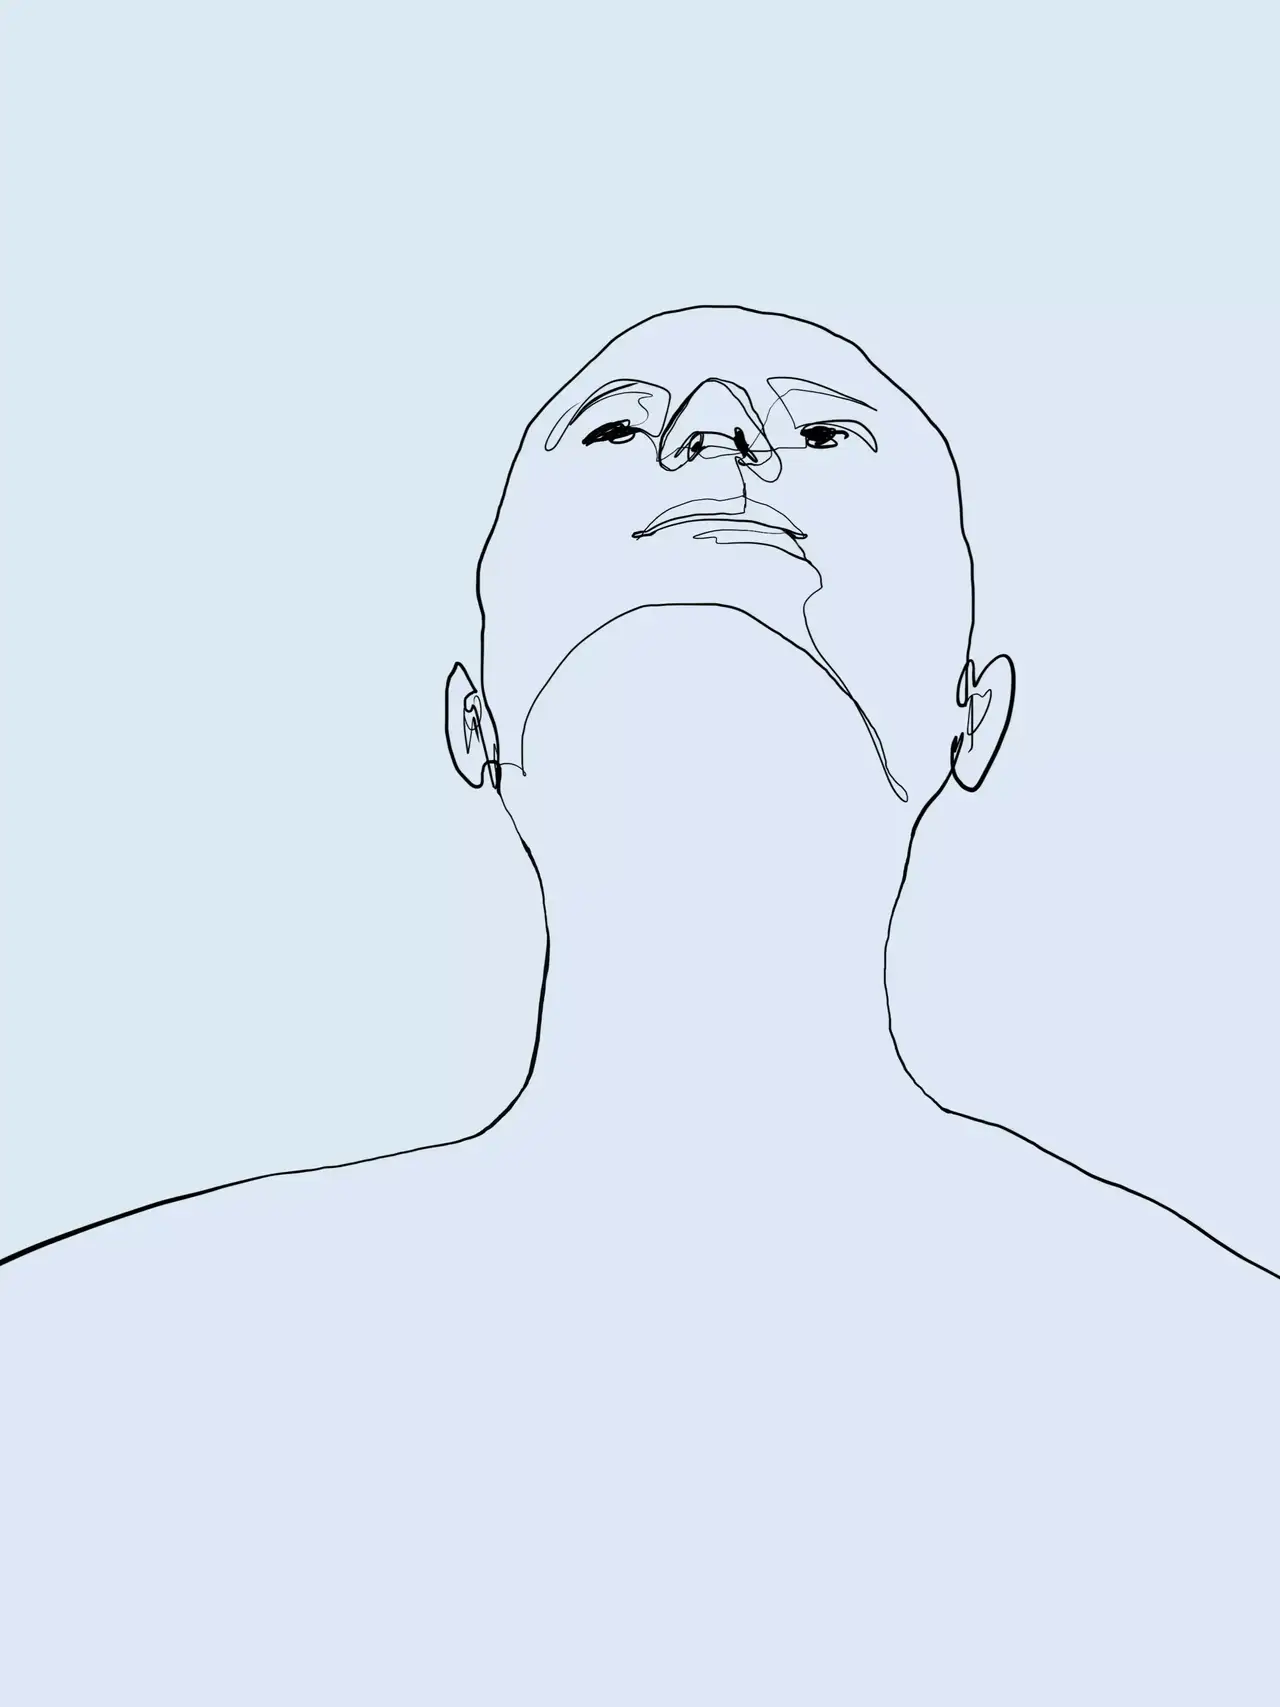 Minimalistische Strichzeichnung einer Person, die vor einem blauen Hintergrund nach oben schaut.